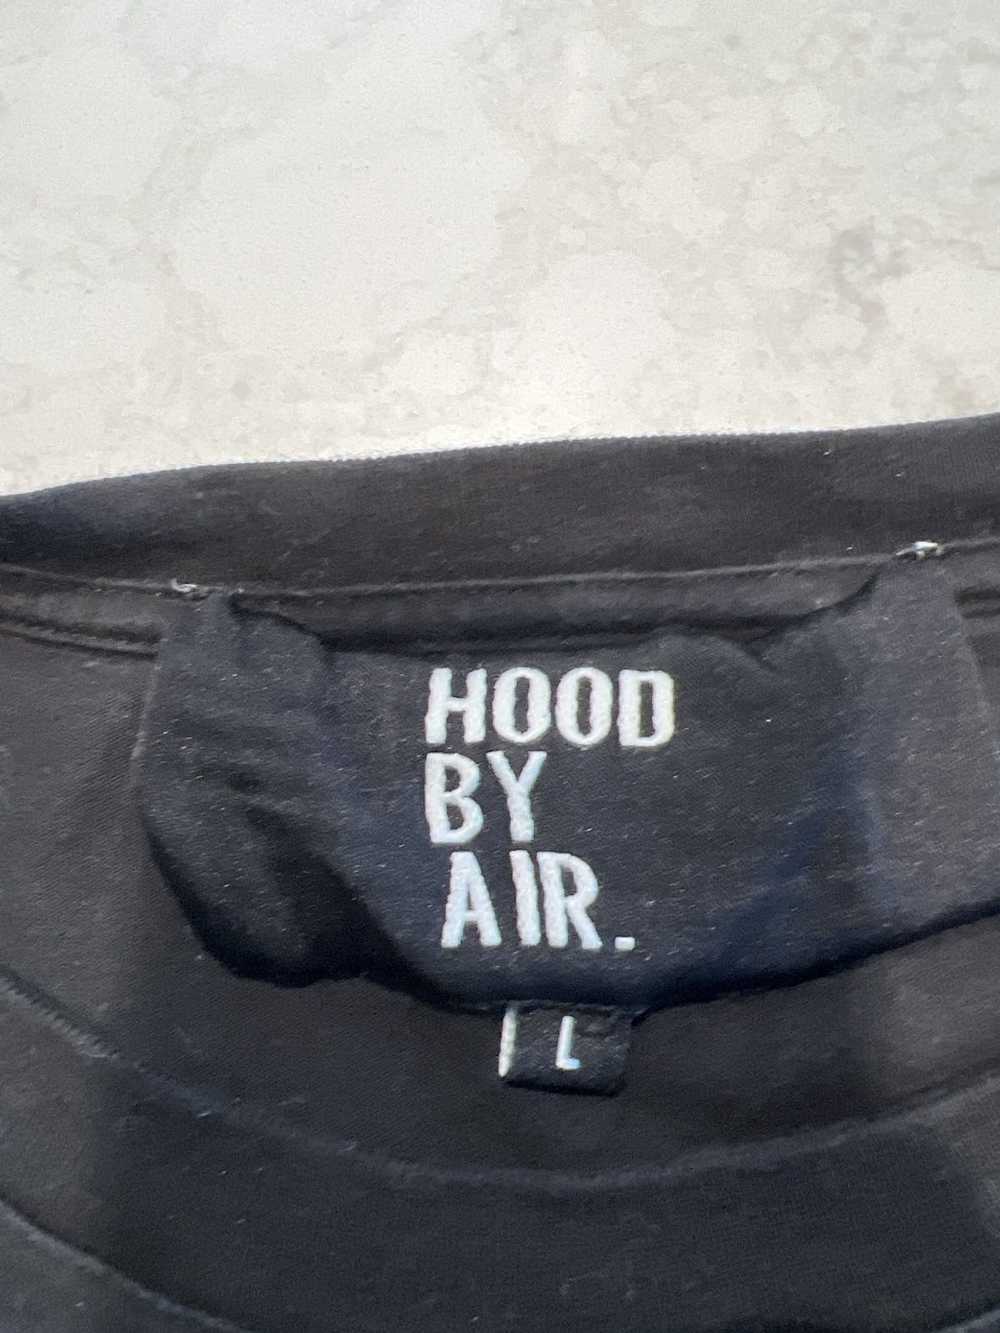 Hood By Air HOOD BY AIR LONG SLEVE - image 2